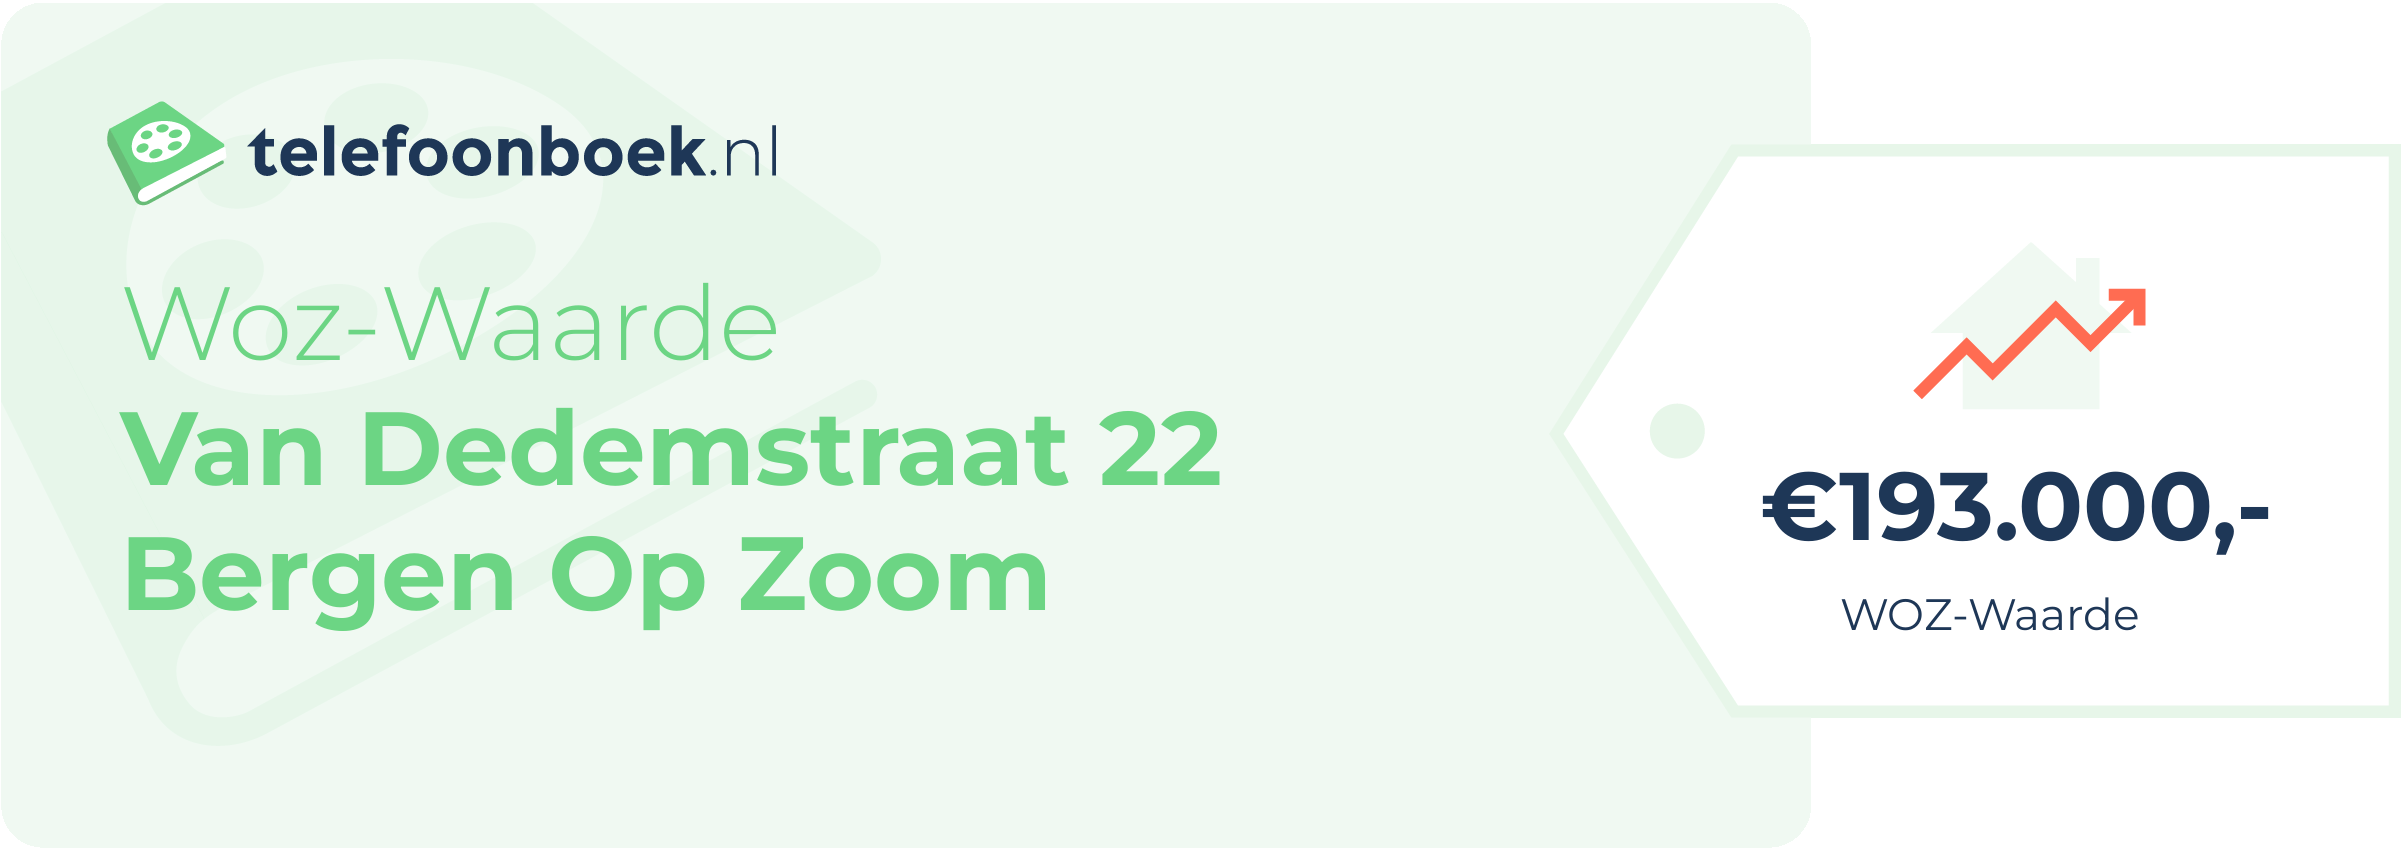 WOZ-waarde Van Dedemstraat 22 Bergen Op Zoom